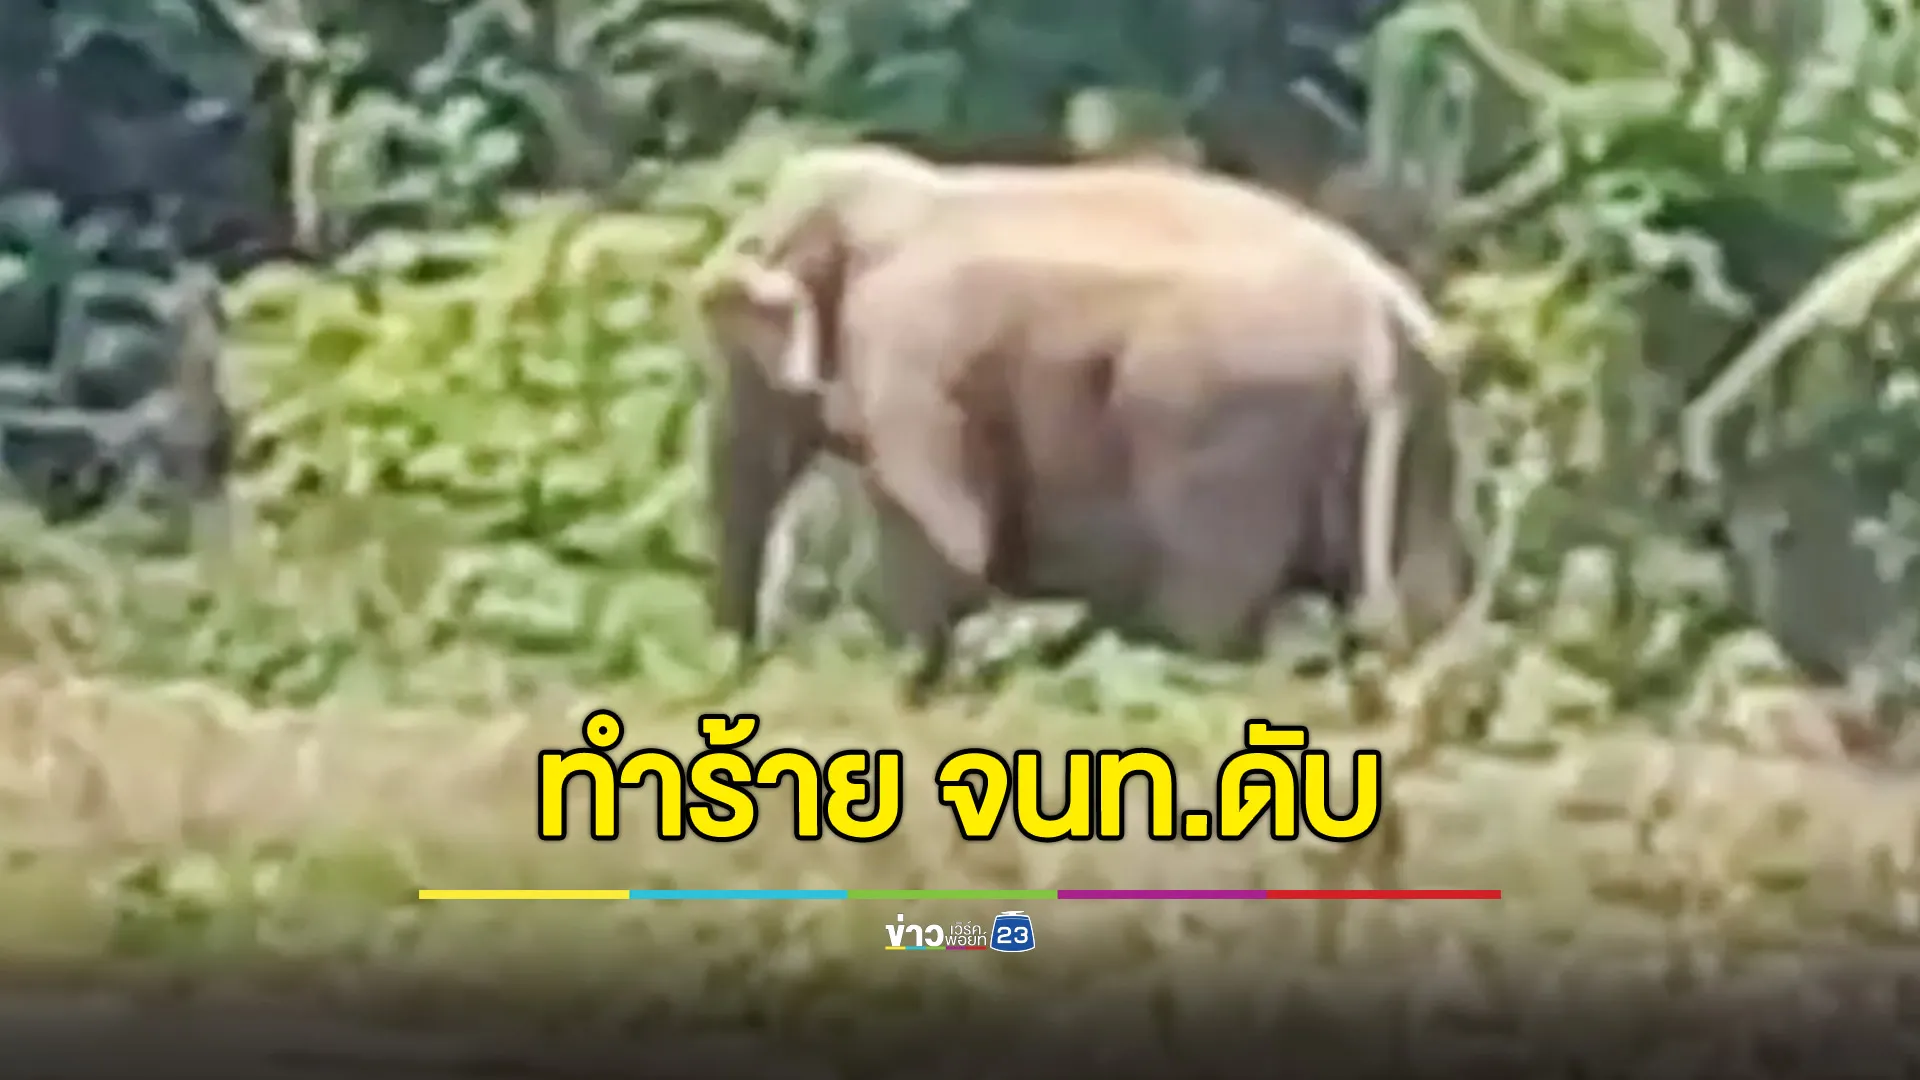 สลด! ช้างป่าตกมันทำร้ายเจ้าหน้าที่ดับอนาถคาเครื่องแบบ 